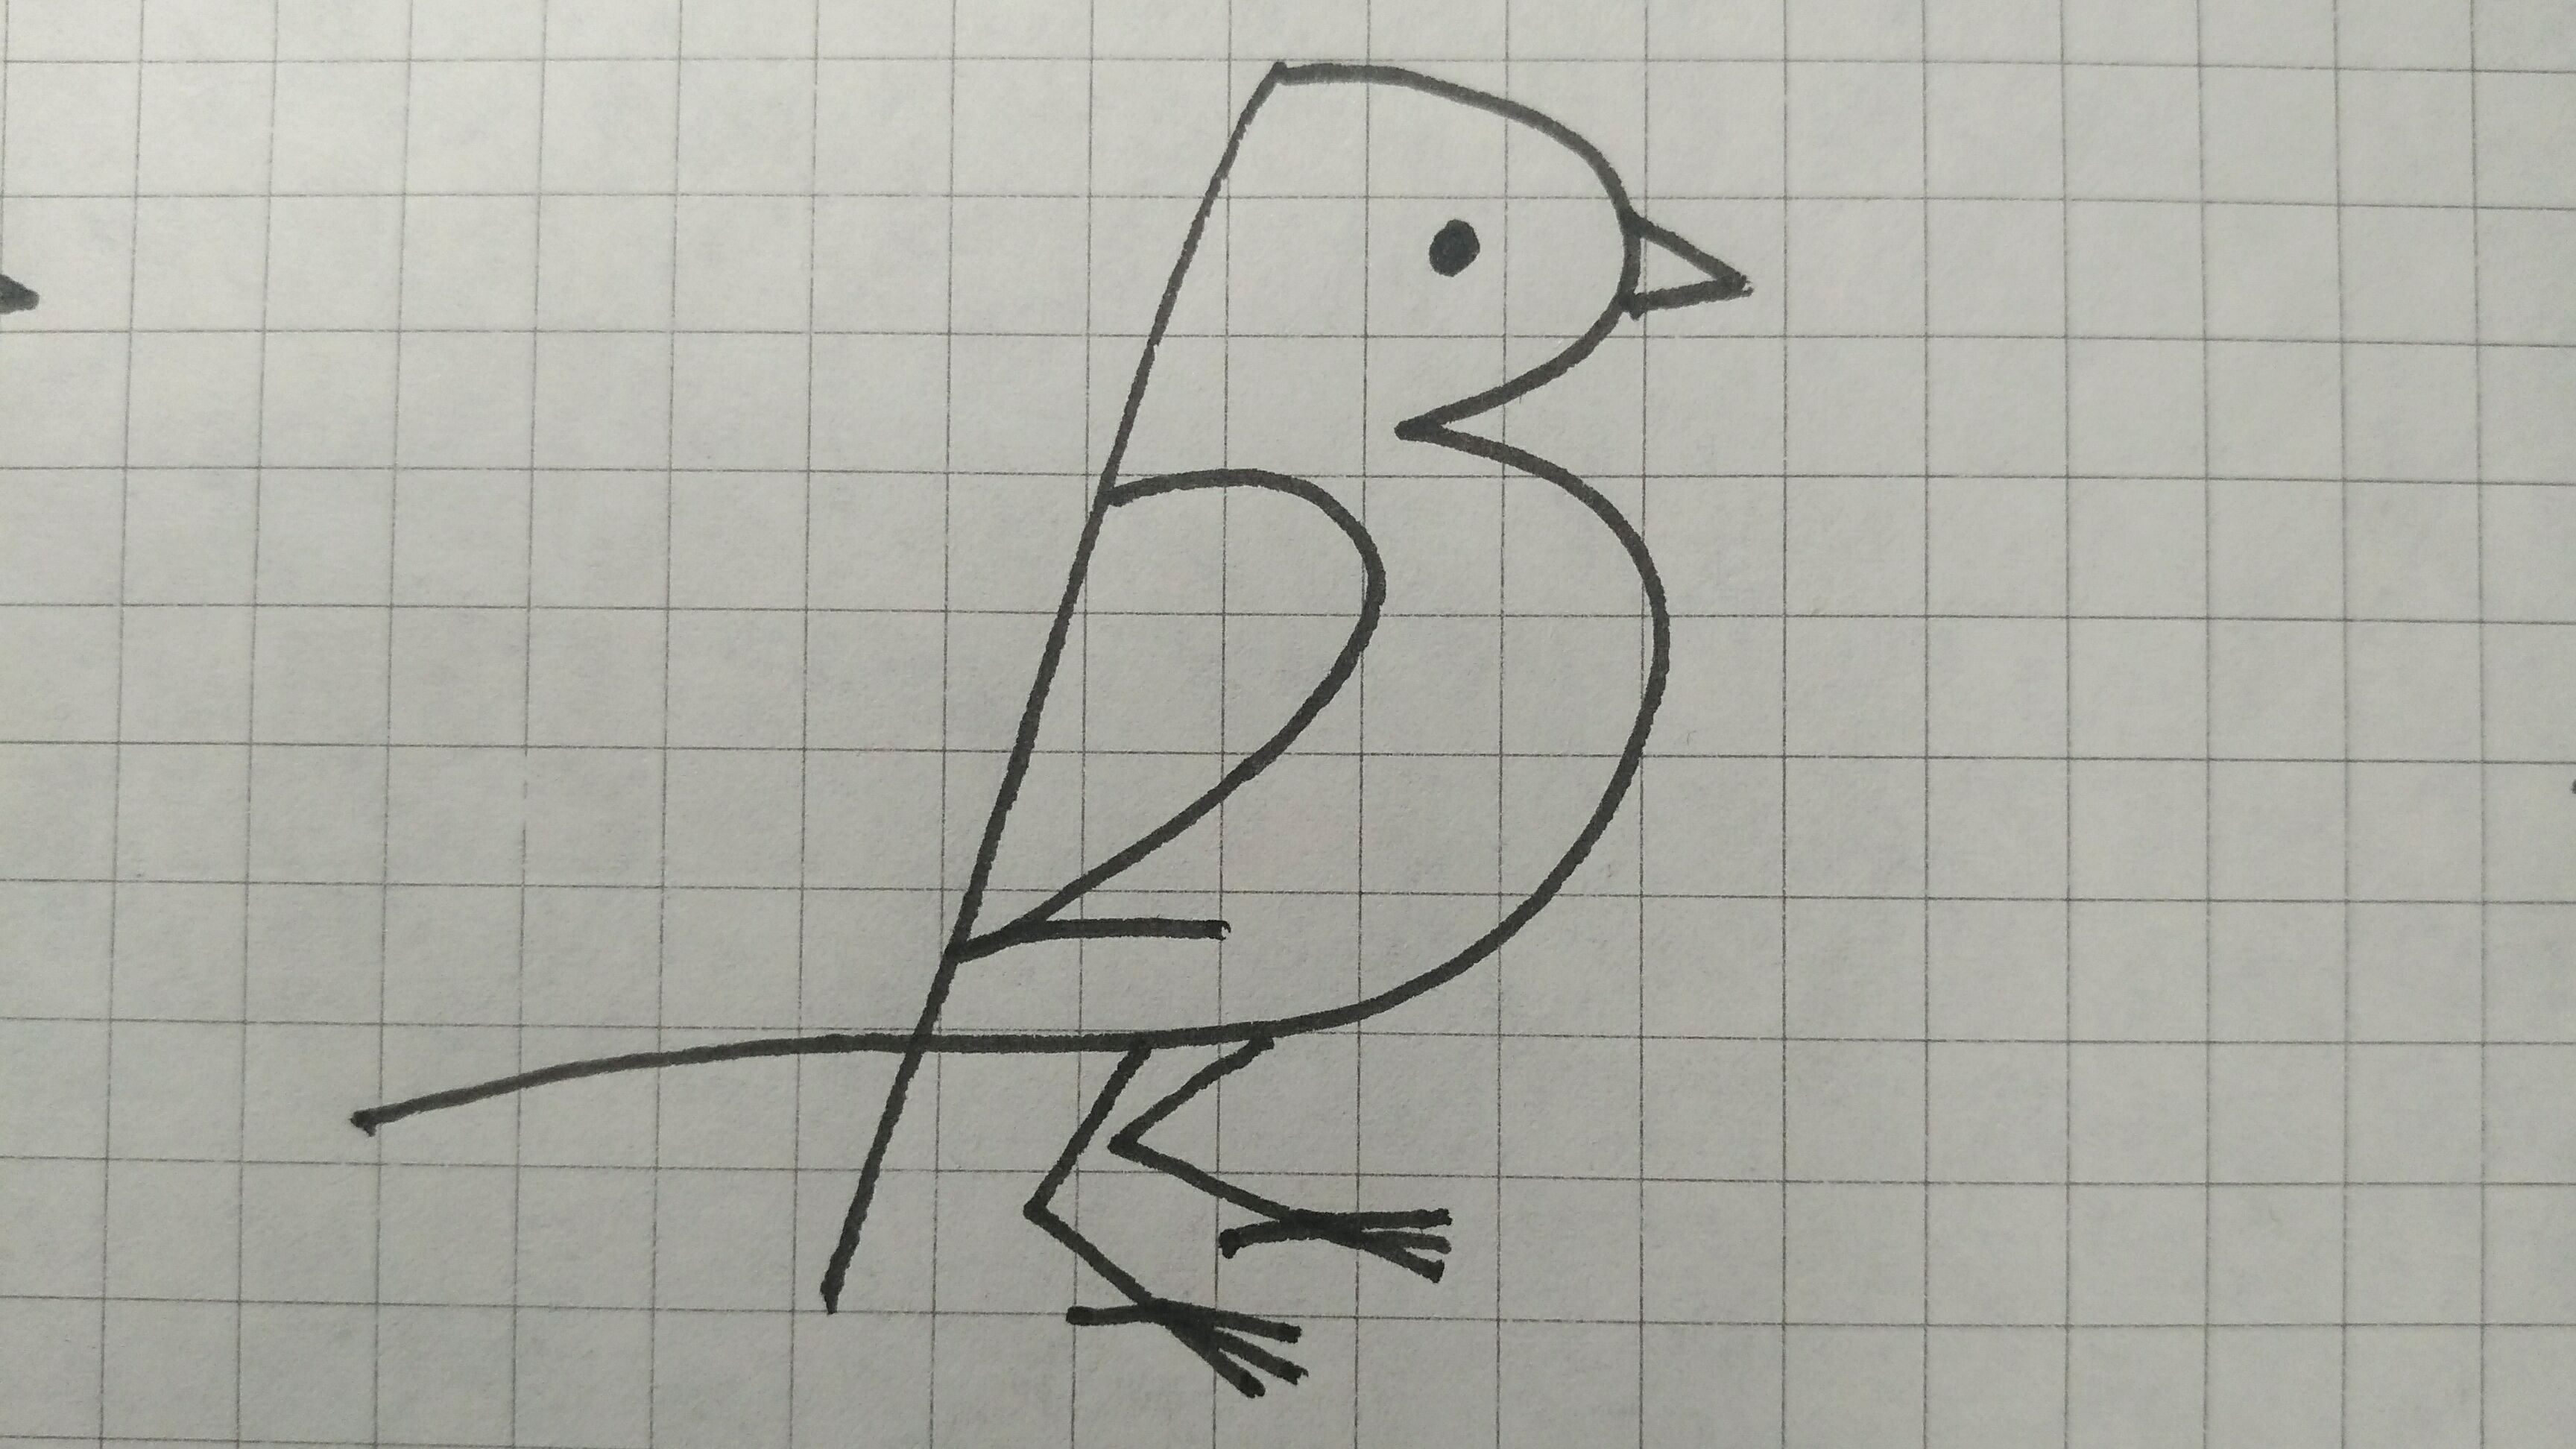 用数字123画小鸟 画画图片